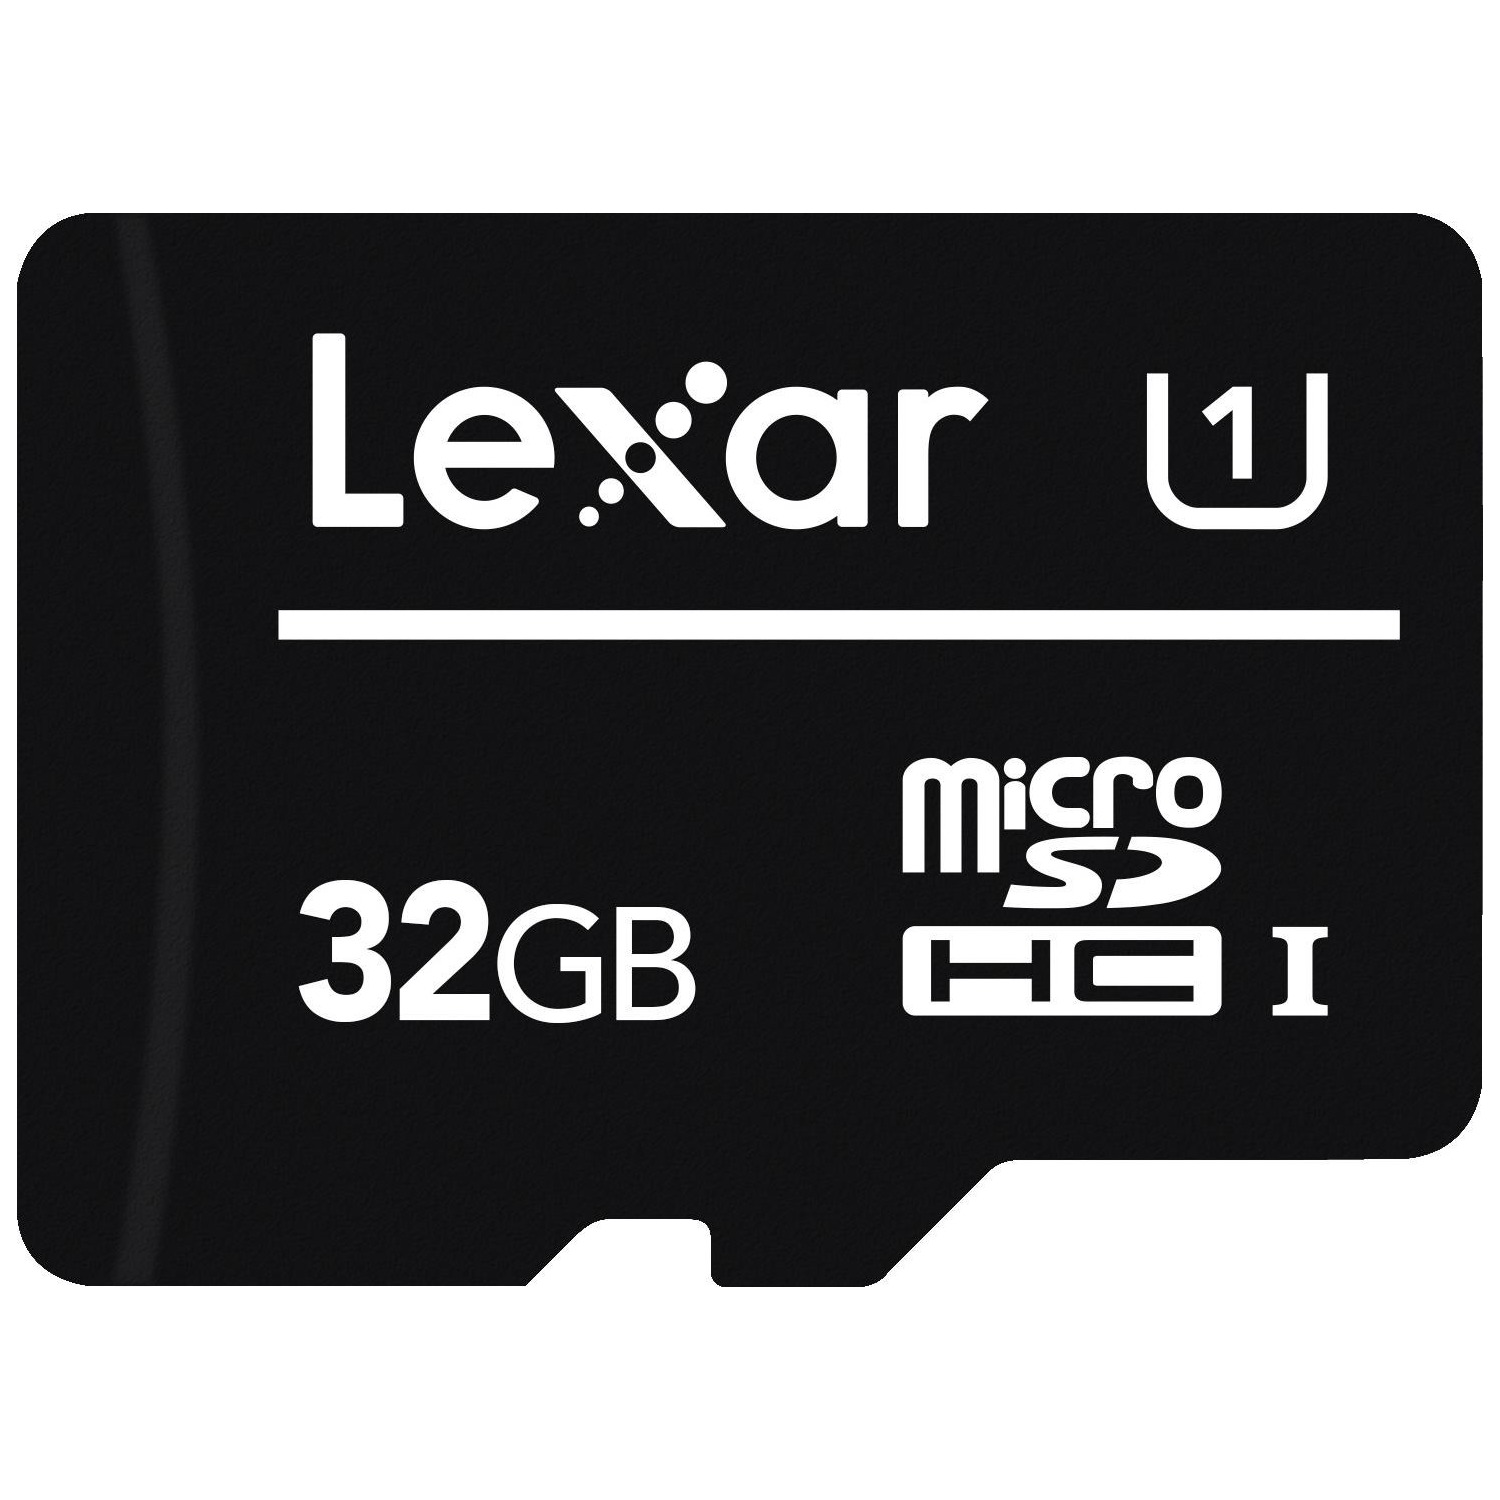 Immagine per MicroSD Lexar 32GB classe 10 senza adattatore da DIMOStore